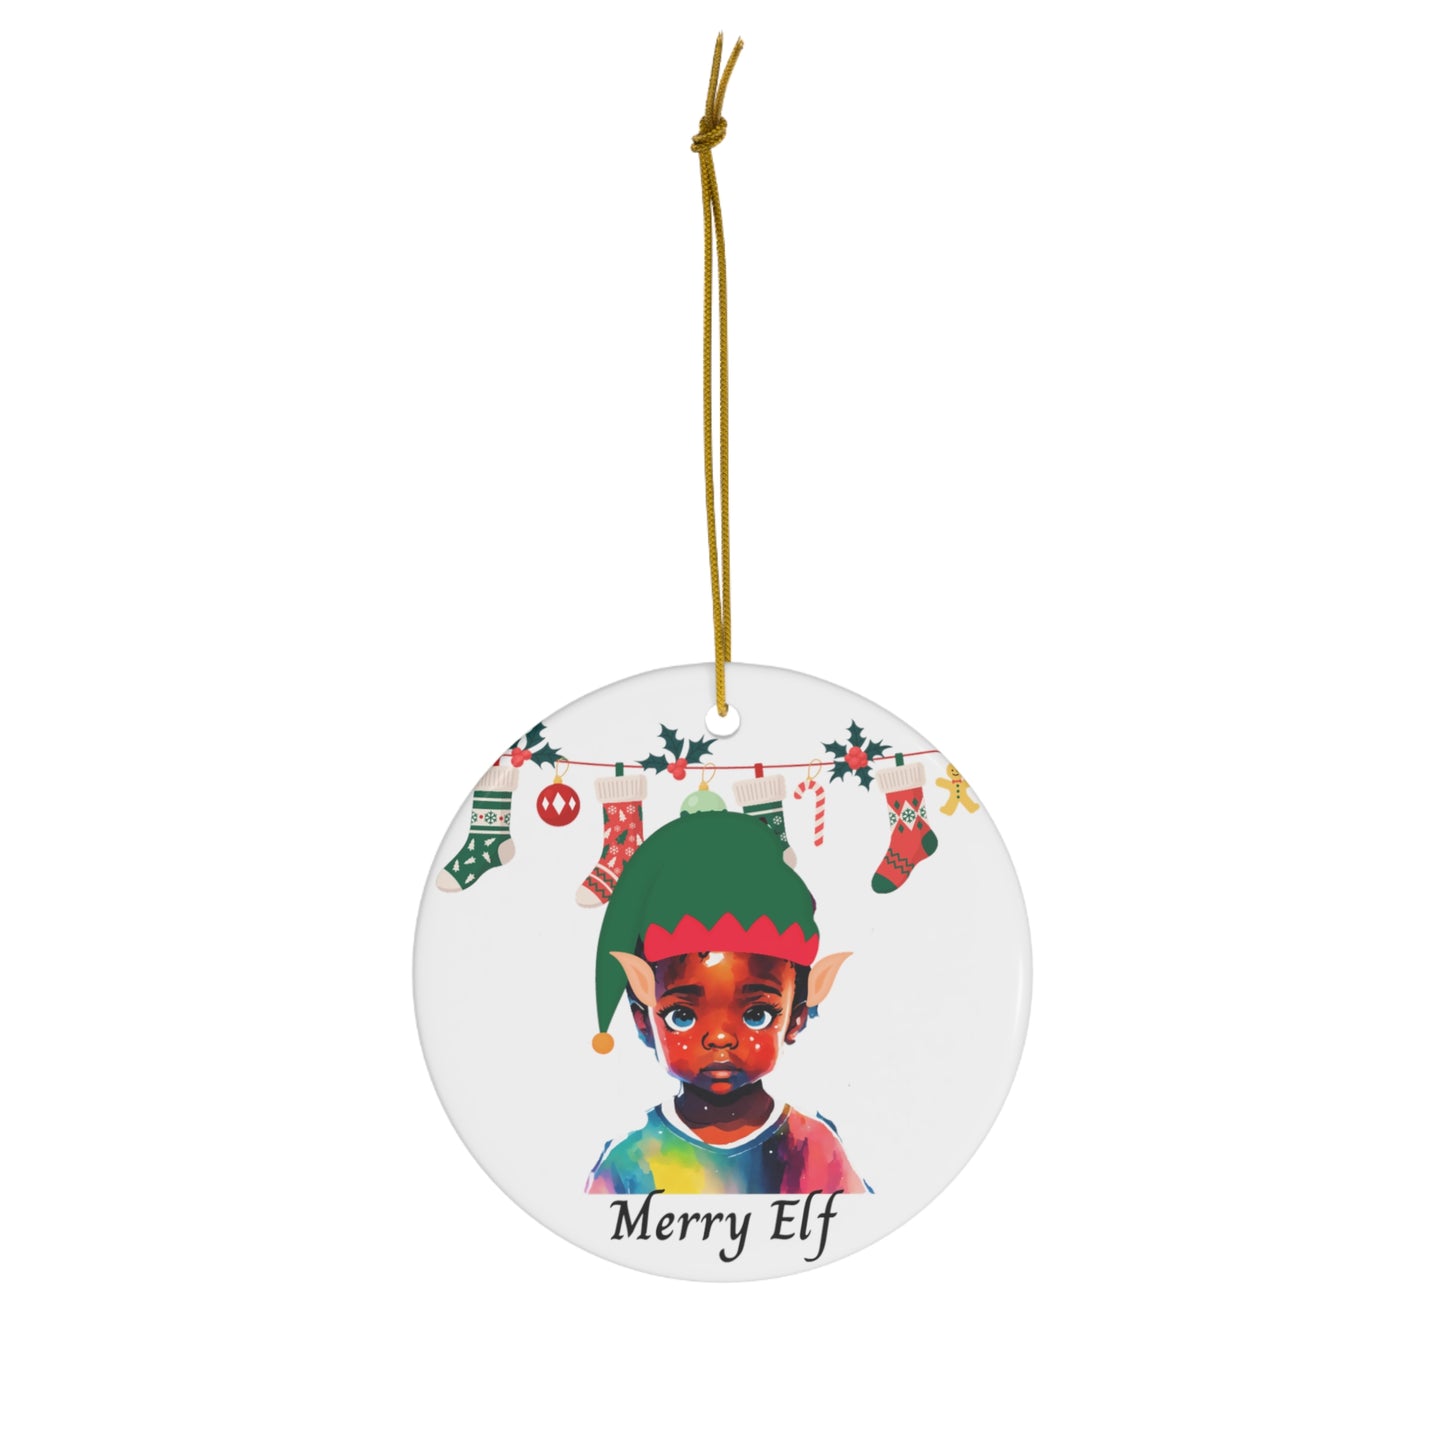 Merry Elf | Ceramic Ornament, 2 Shapes